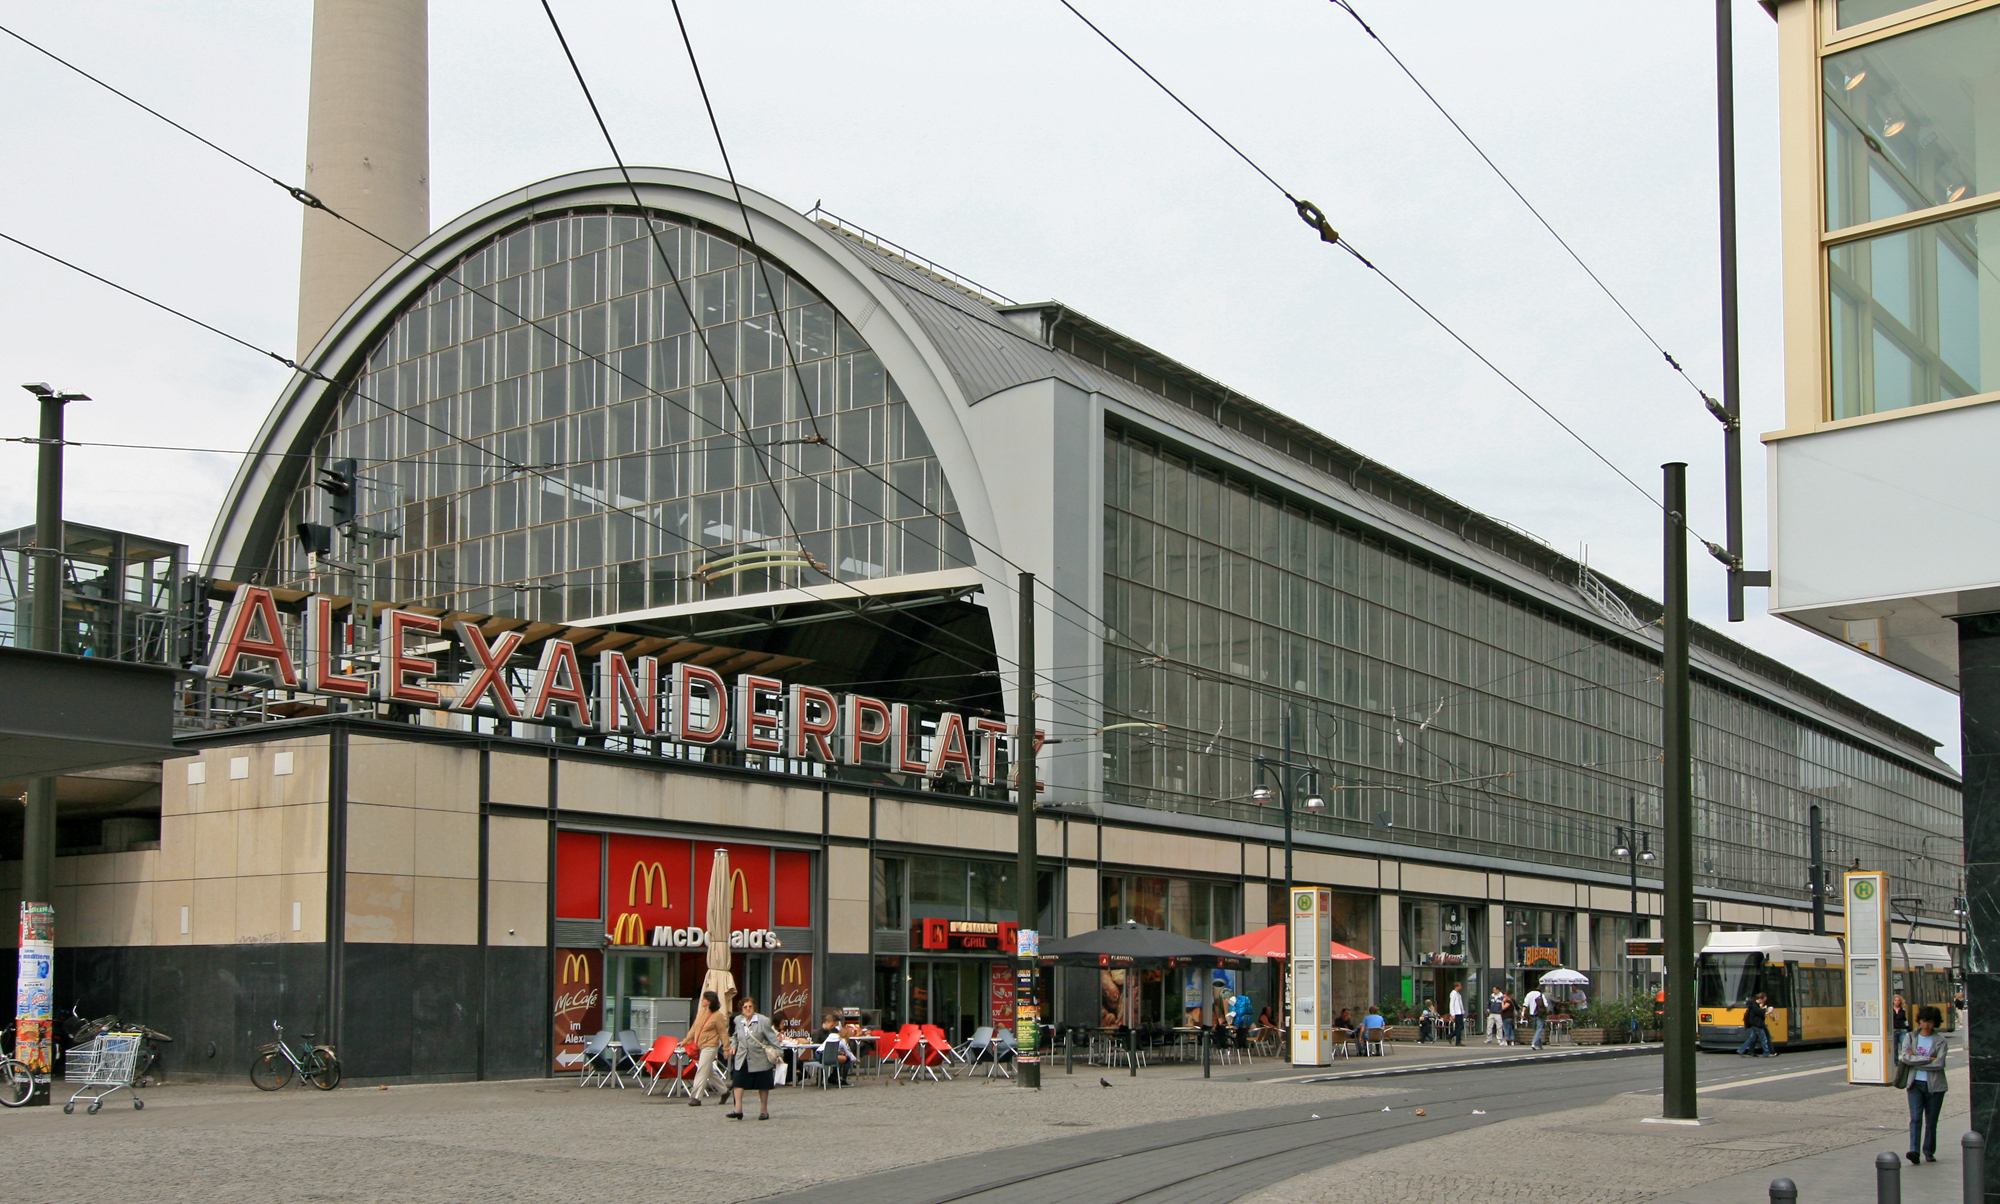 Александрплац берлин